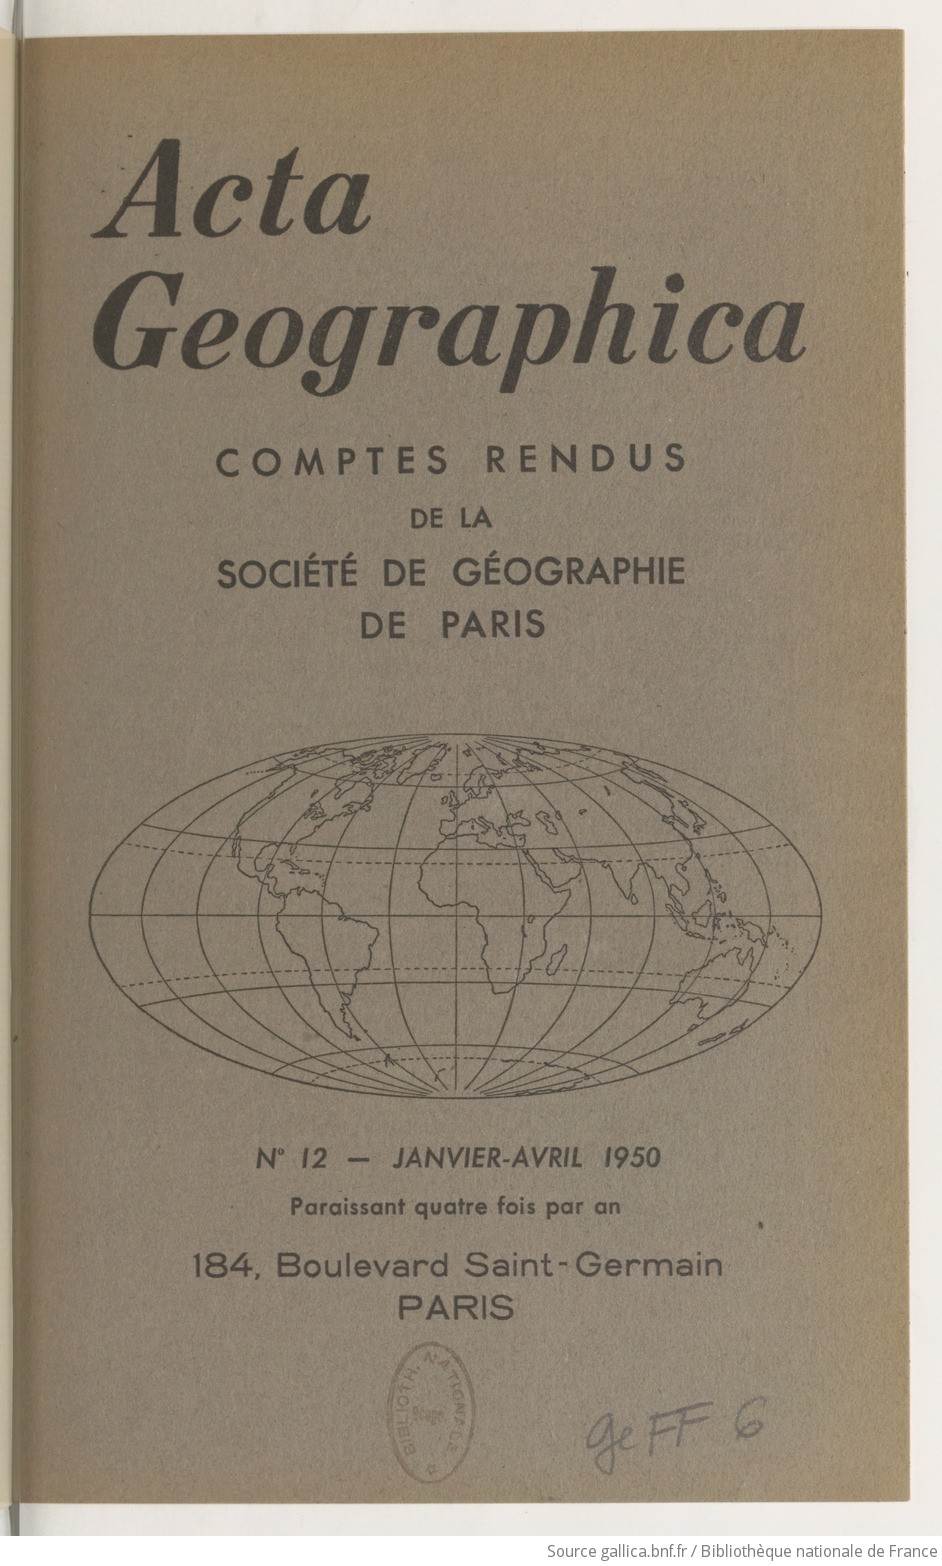 Acta geographica : comptes rendus de la Société de géographie de Paris